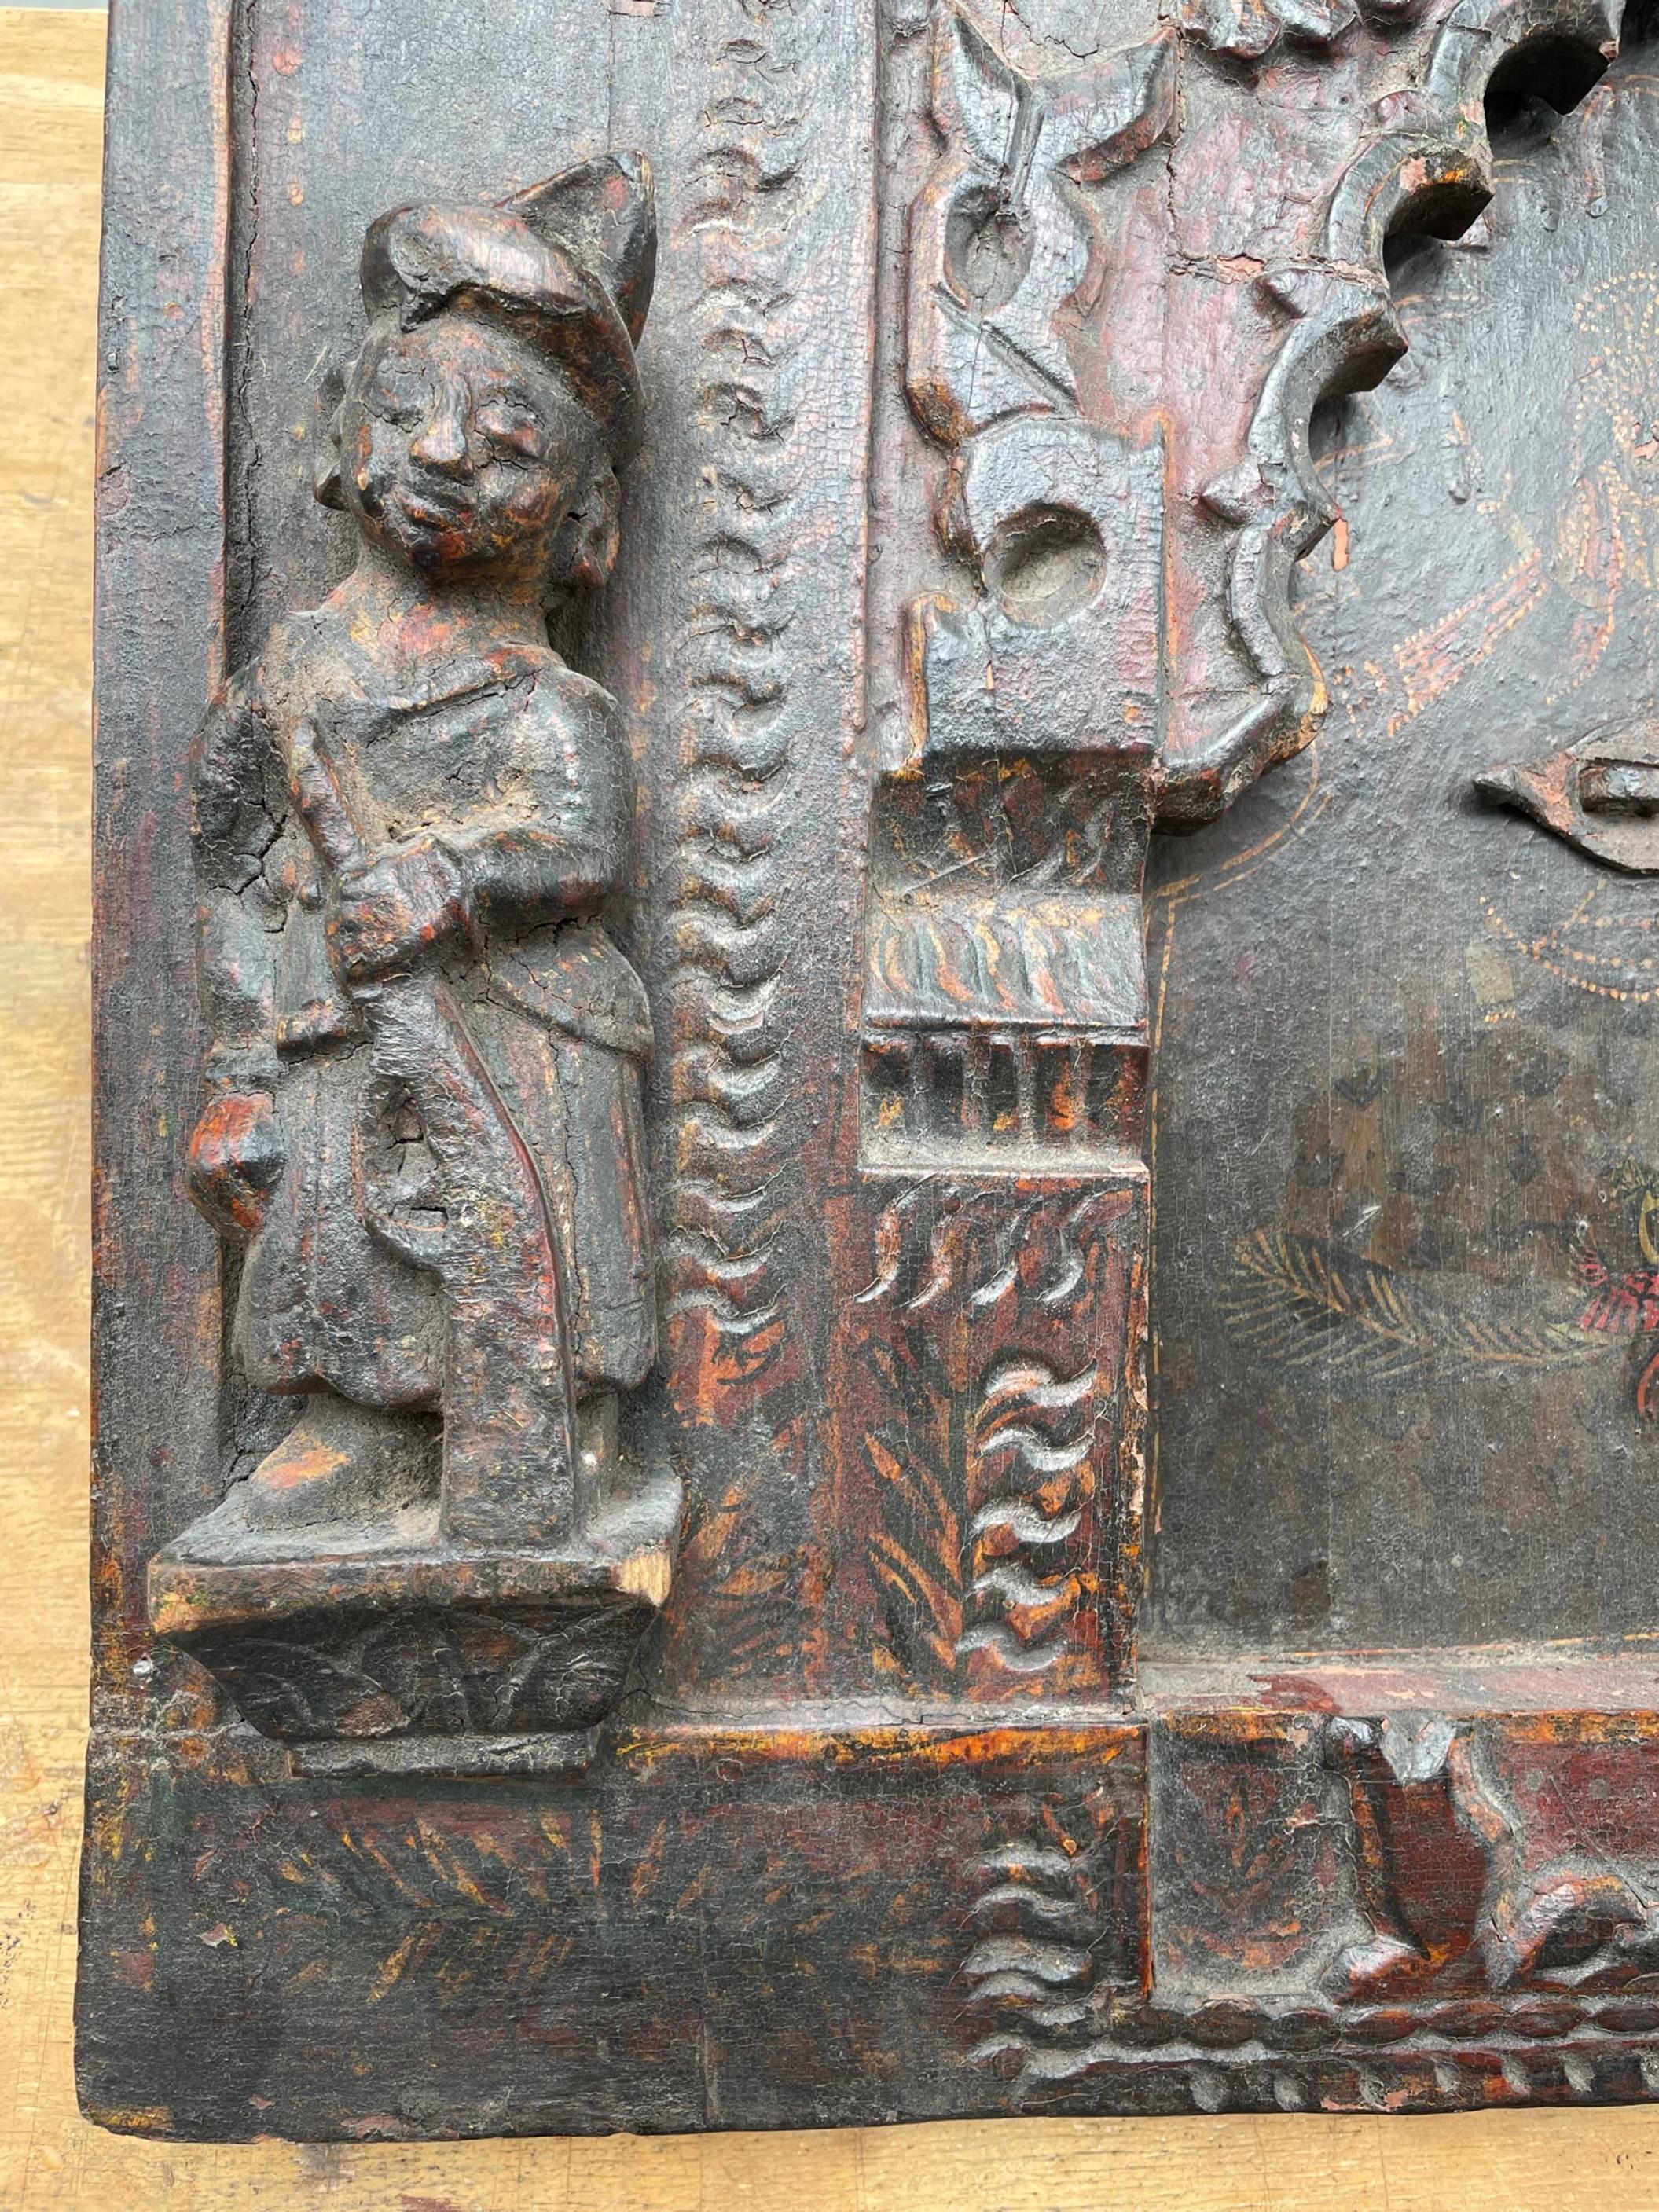 Alte seltene Indien Holz handgeschnitzt polychrome Wandplatte mit Eisenschloss.

Aufregende und dramatische Holzschnitzerei einer Wandtafel aus Indien. Sie stammt wahrscheinlich aus dem 17. bis 18. Jahrhundert. Für den Rahmen mit der doppelten